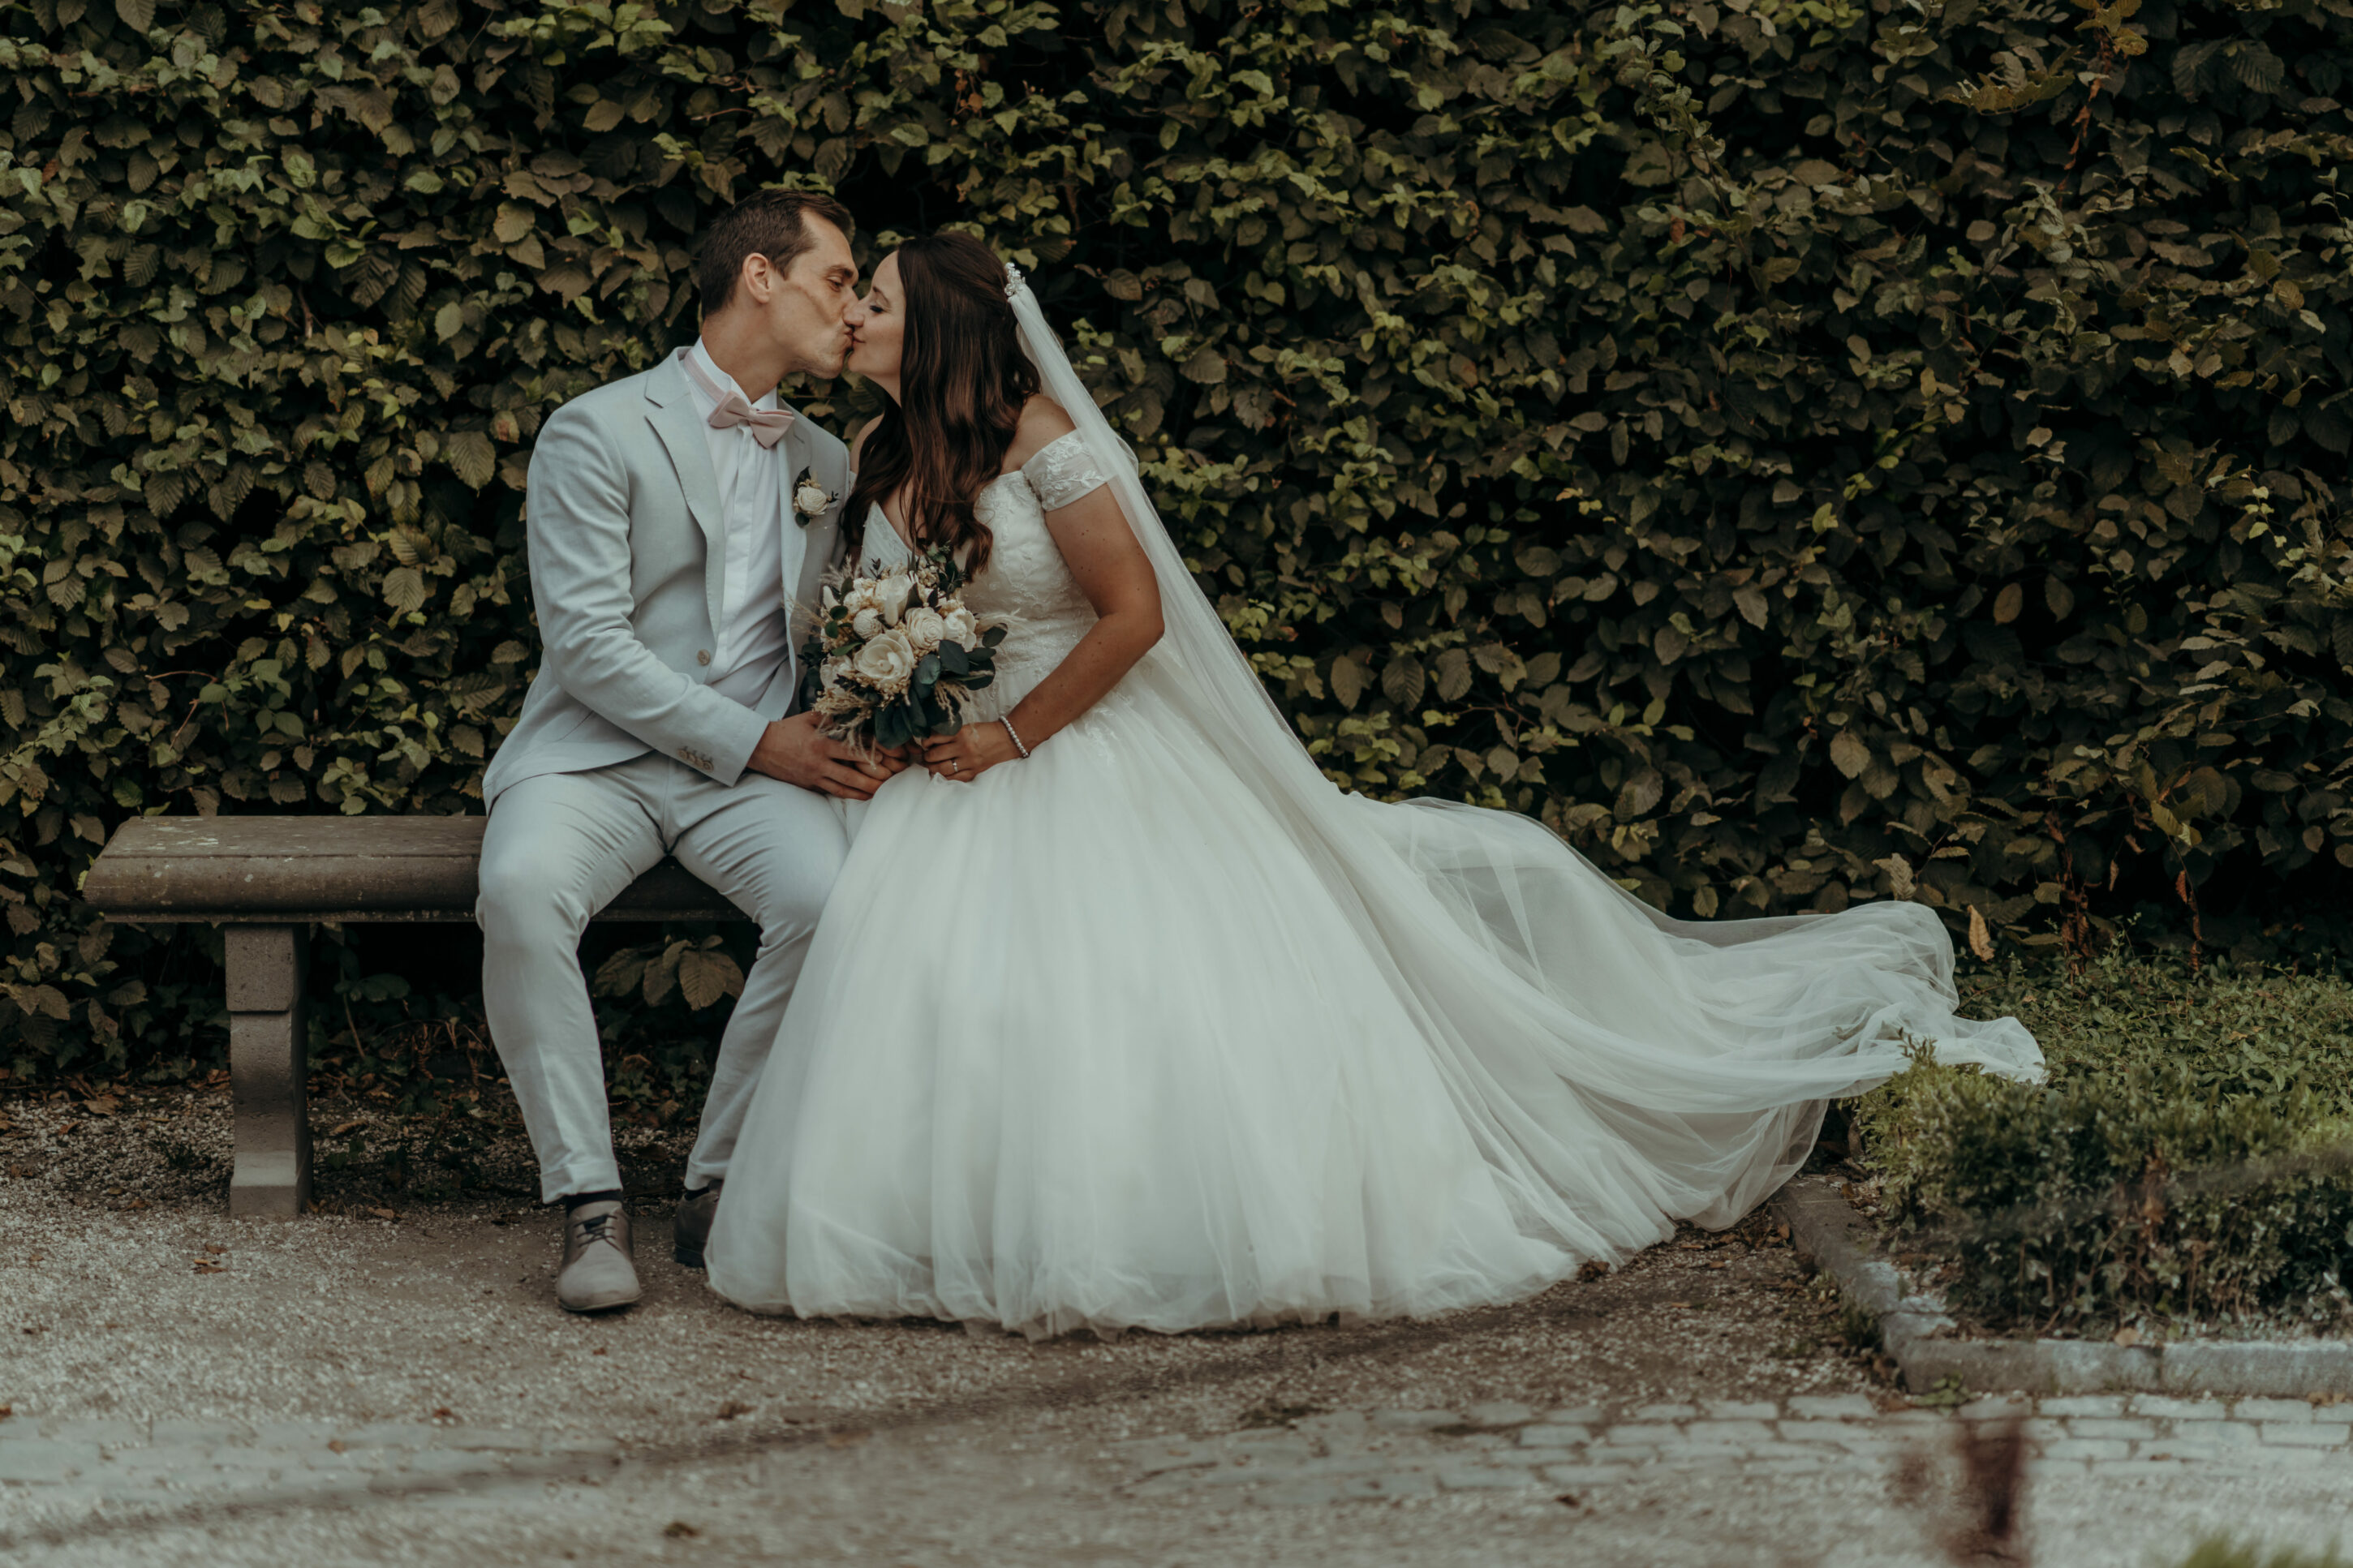 Brautpaar sich küssend auf Schlossbank vor Hecke